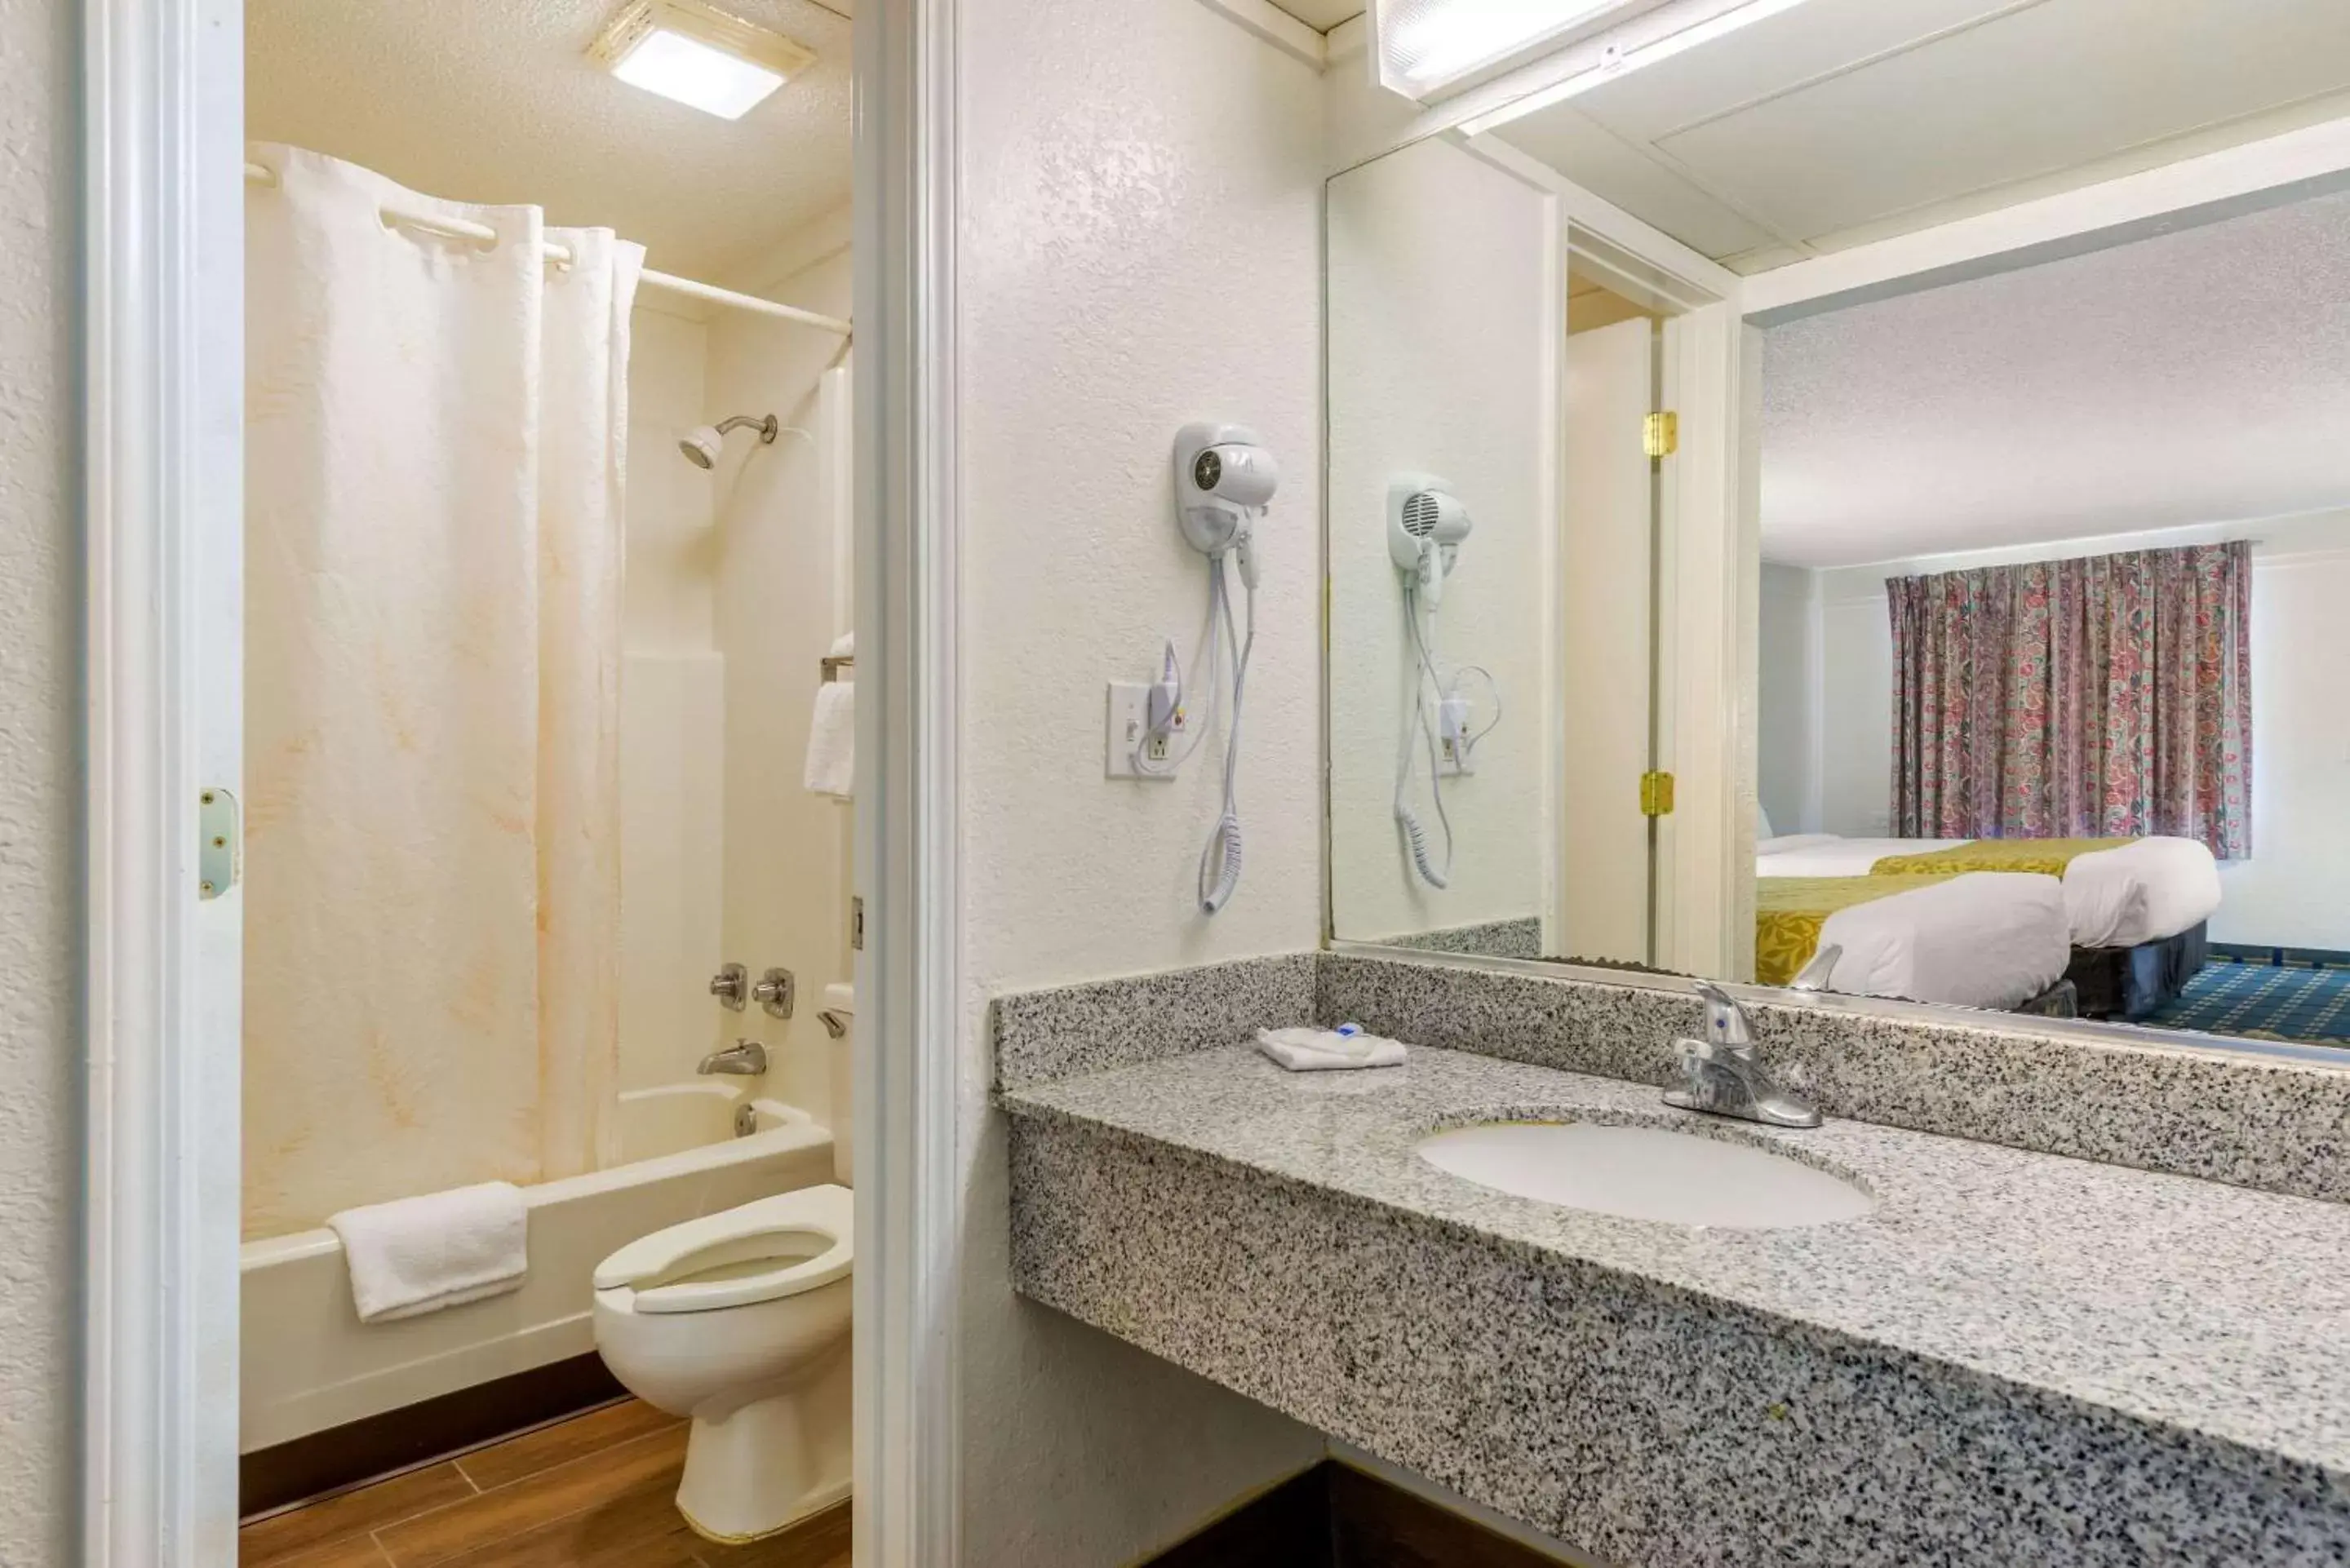 Bedroom, Bathroom in Rodeway Inn Hilliard/Columbus